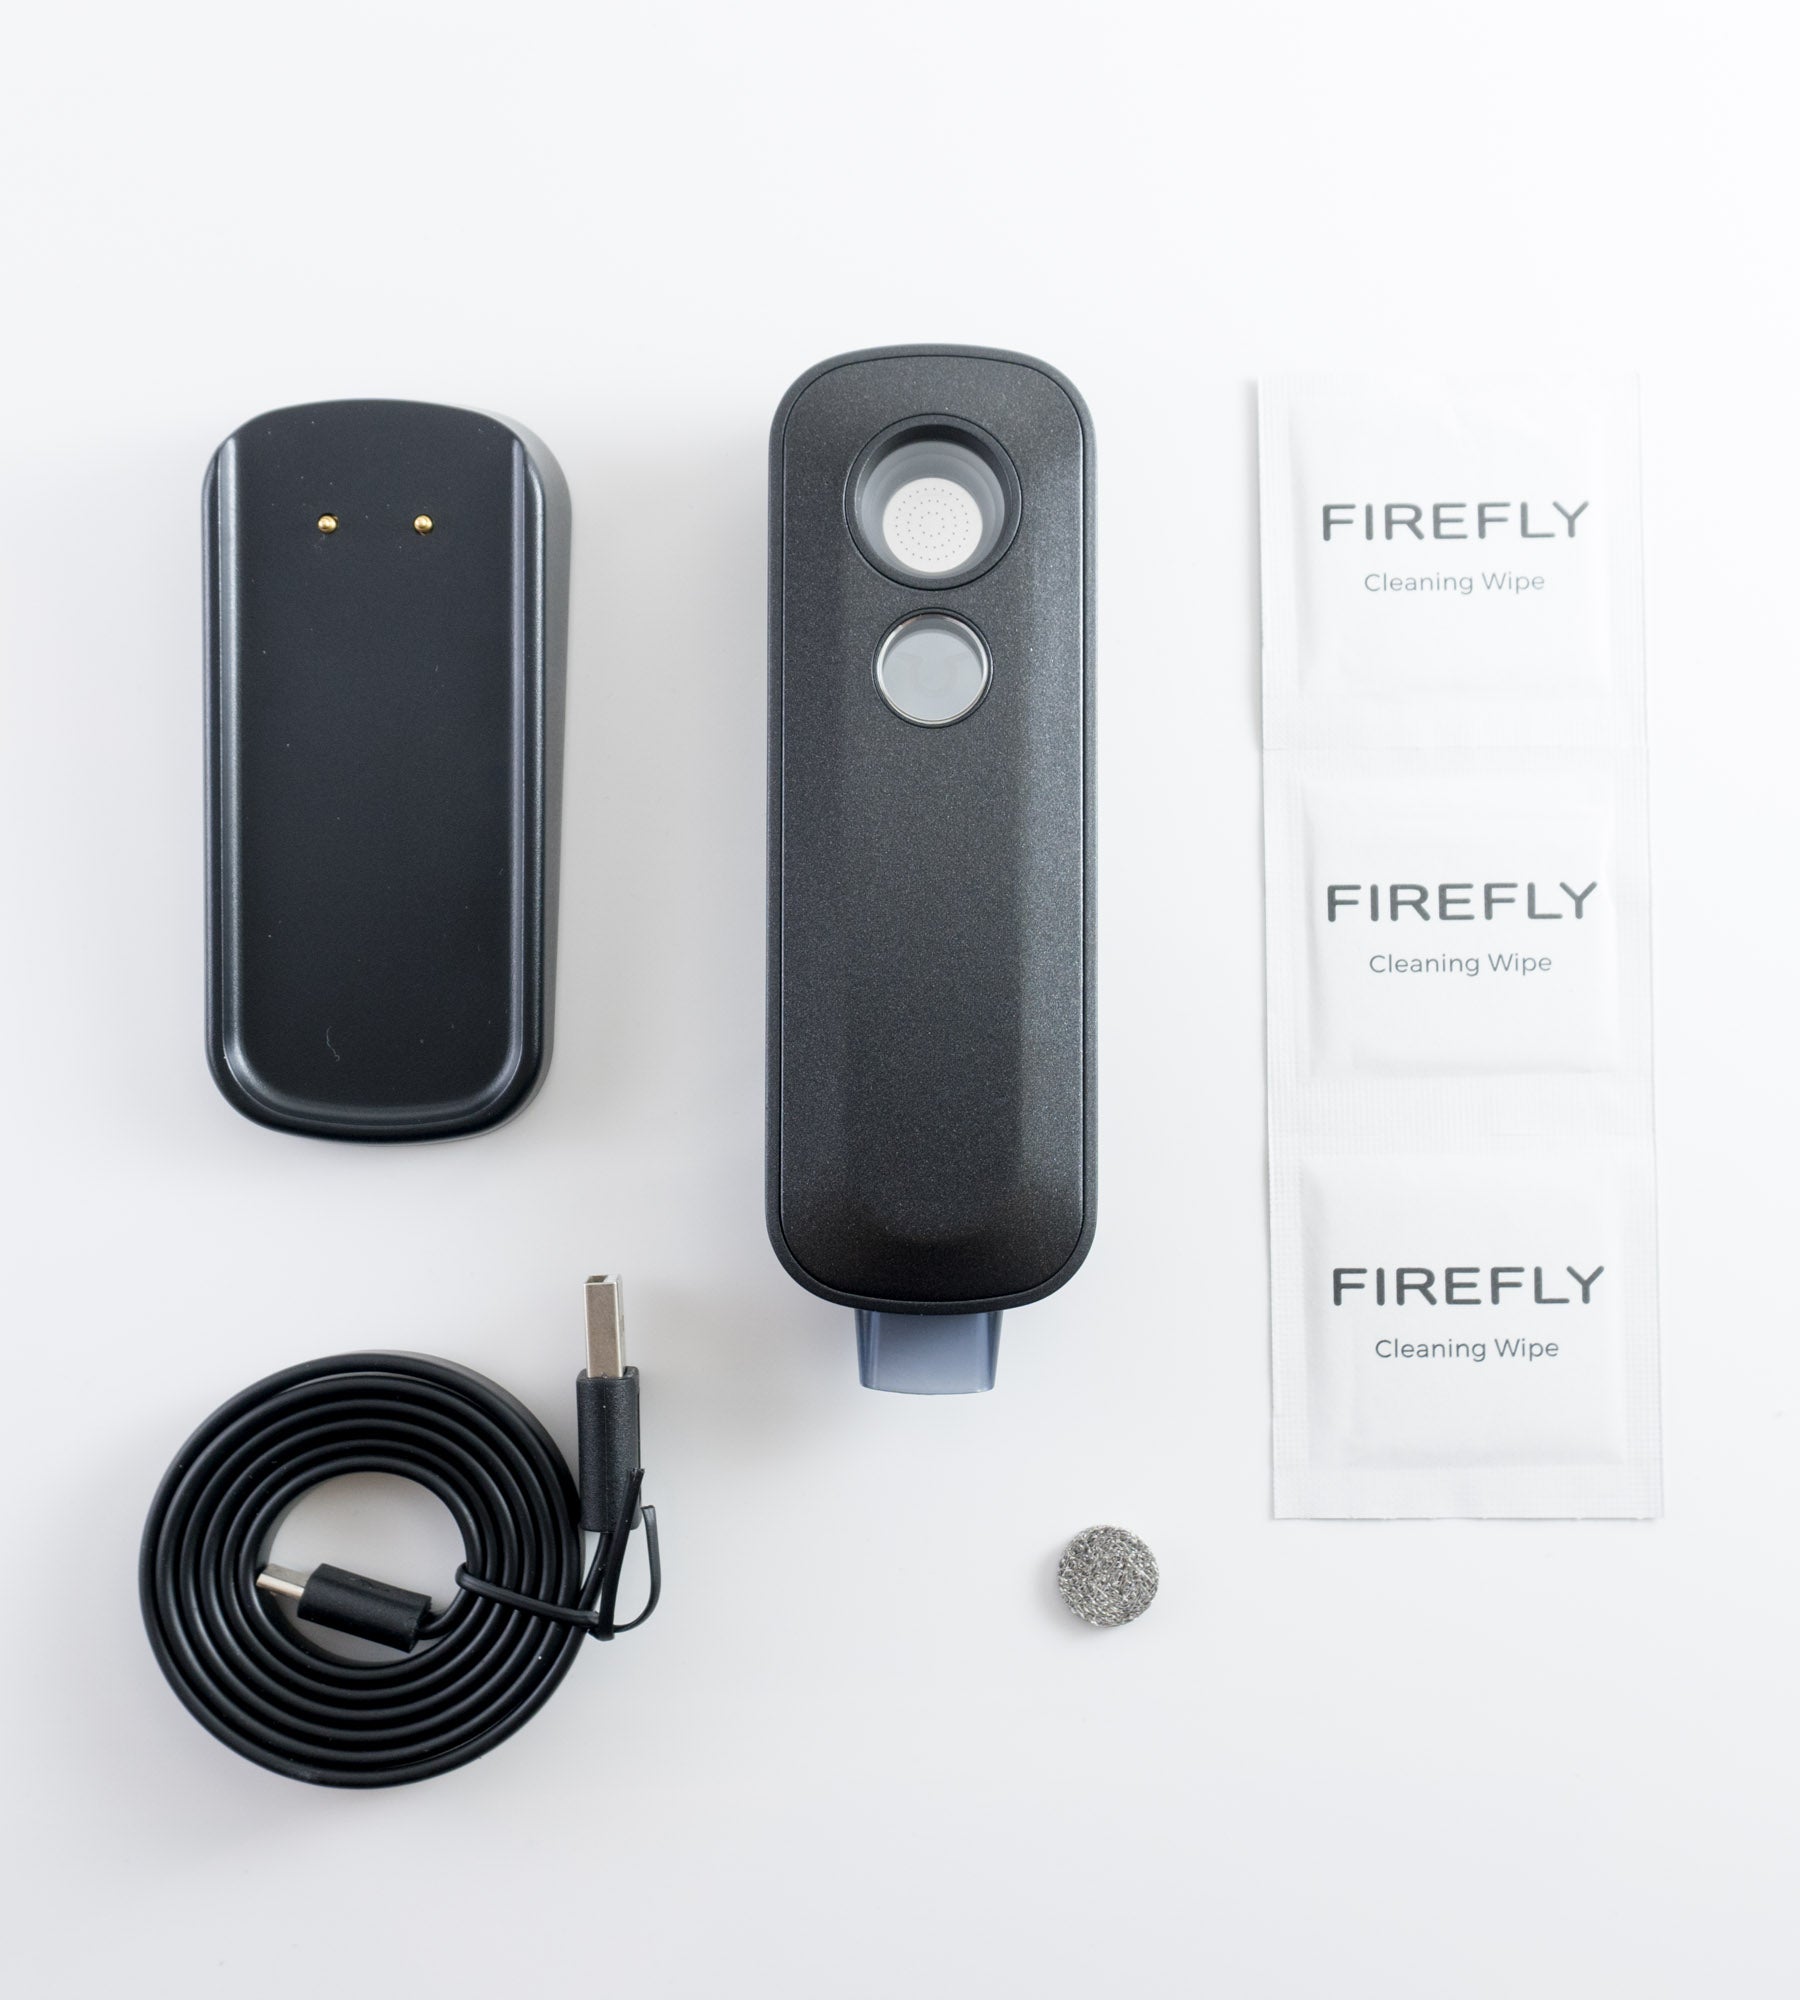 Firefly 2+ Vaporizer